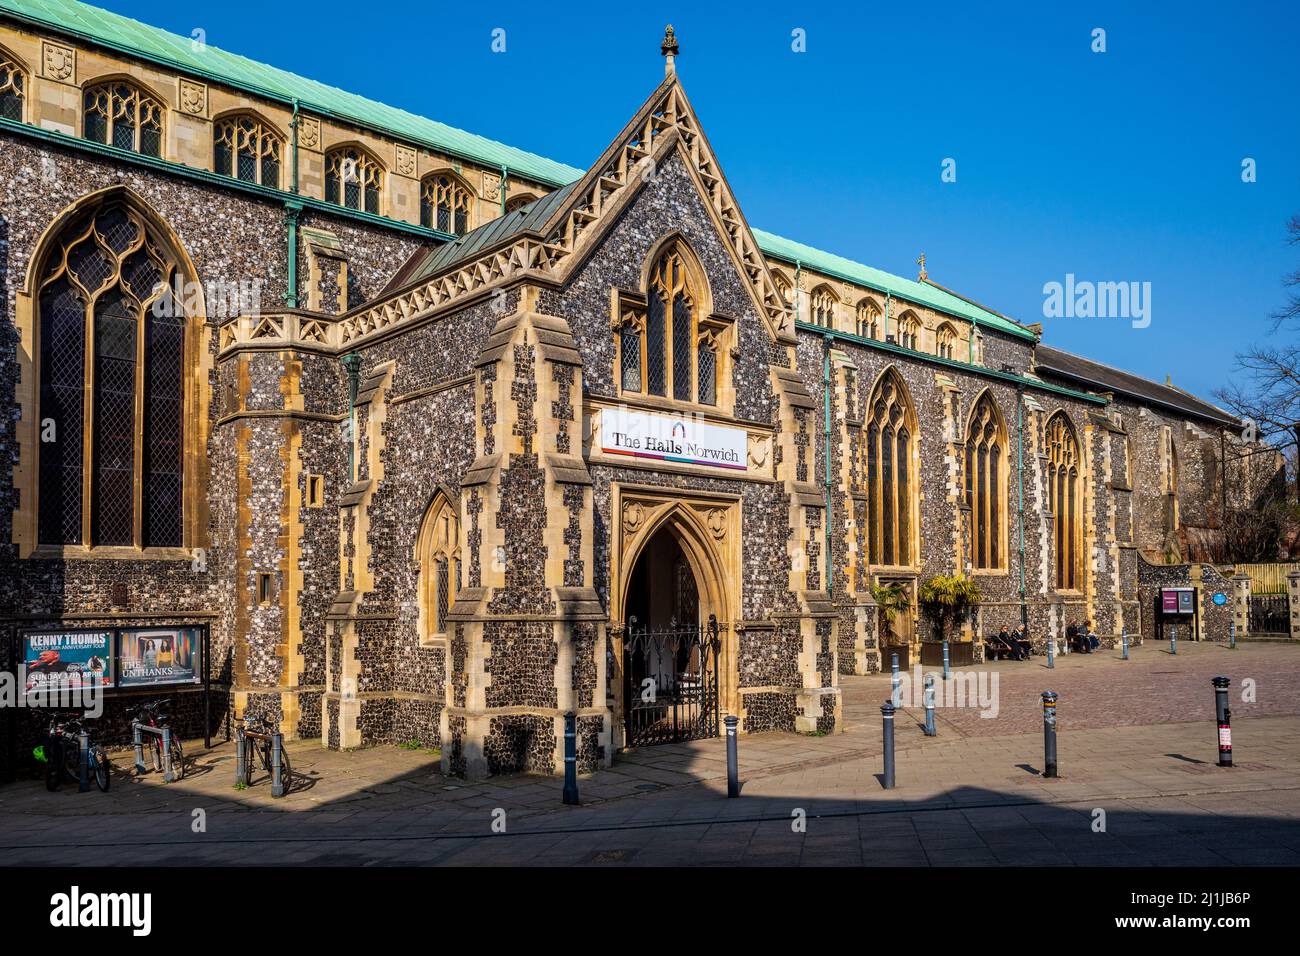 The Halls Norwich, Norfolk. Un complexe de friary médiéval complet datant du 14th siècle, aujourd'hui utilisé comme lieu d'événements dans le centre-ville de Norwich. Banque D'Images